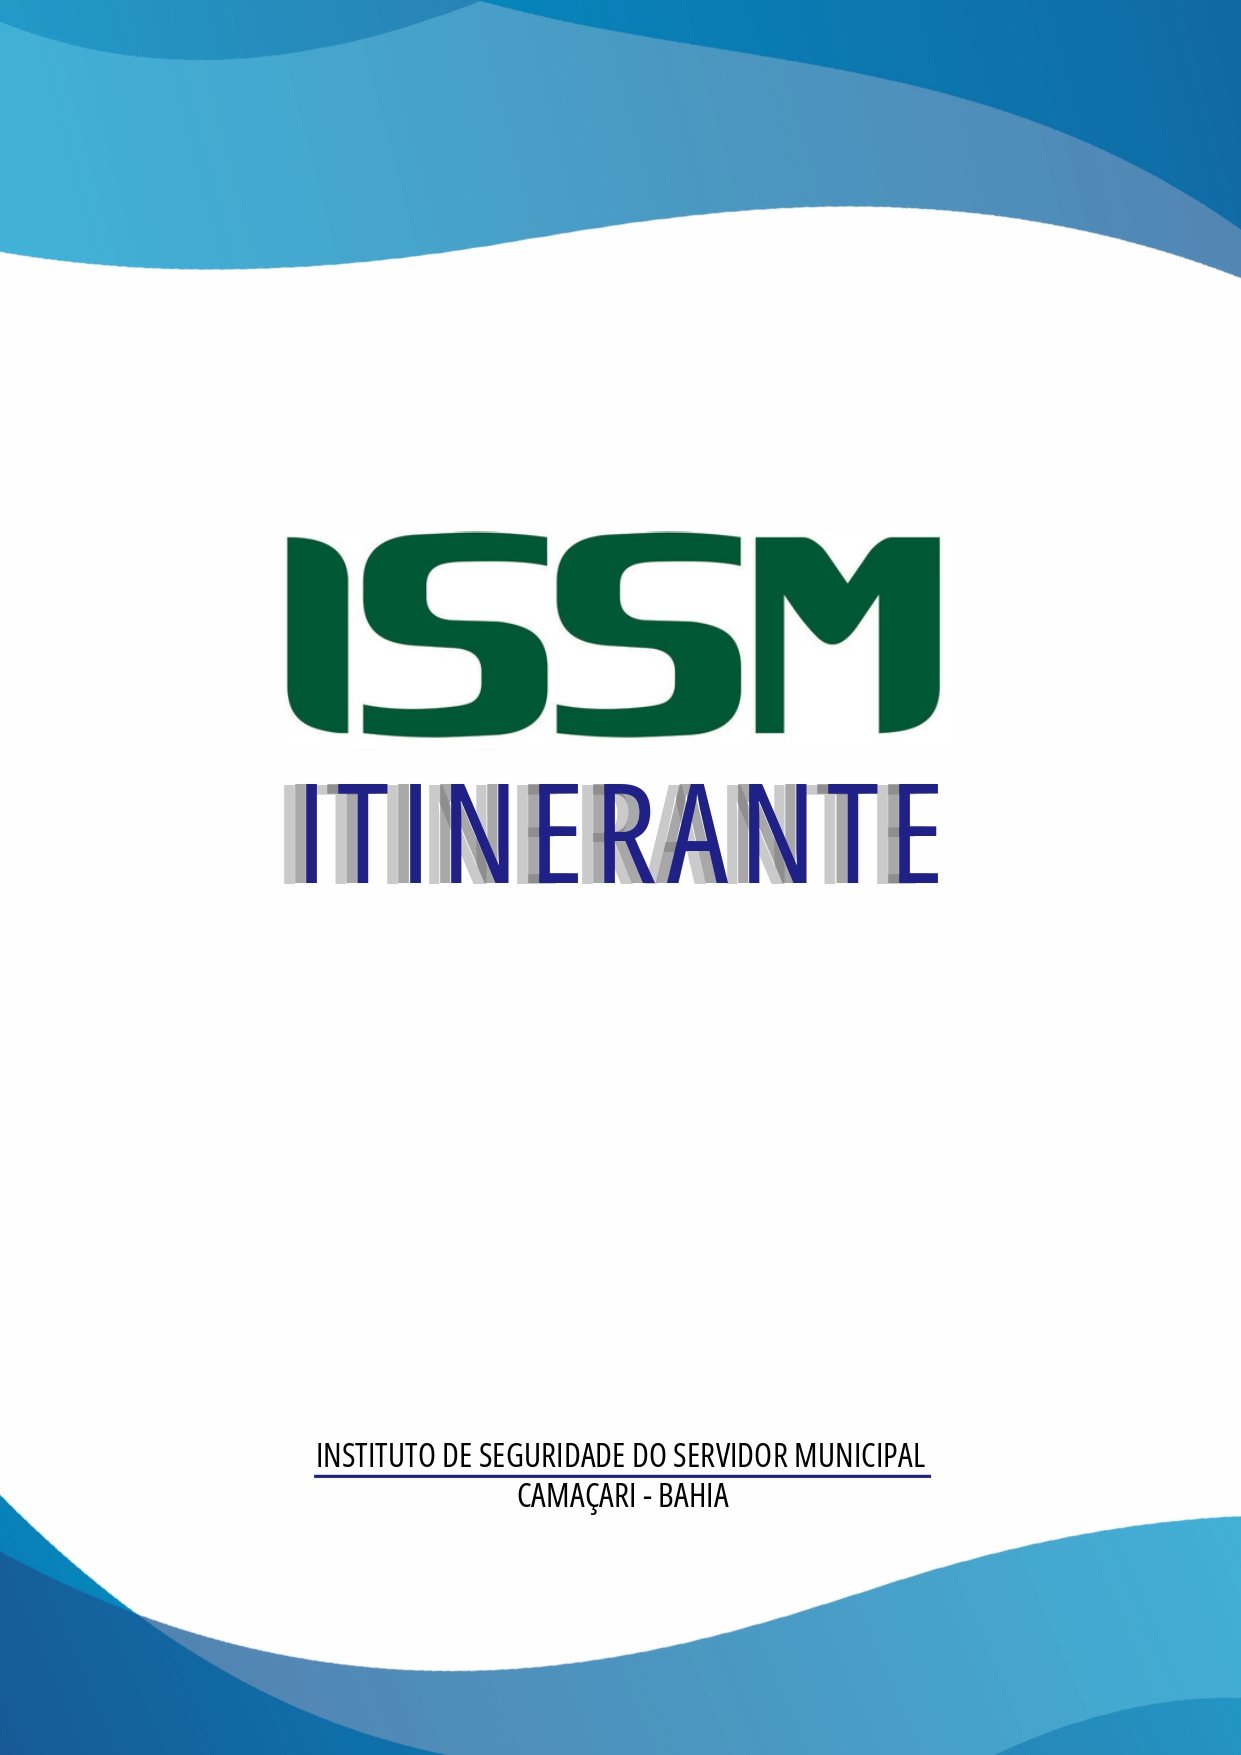 Apresentação ISSM Itinerante 1 page 0001